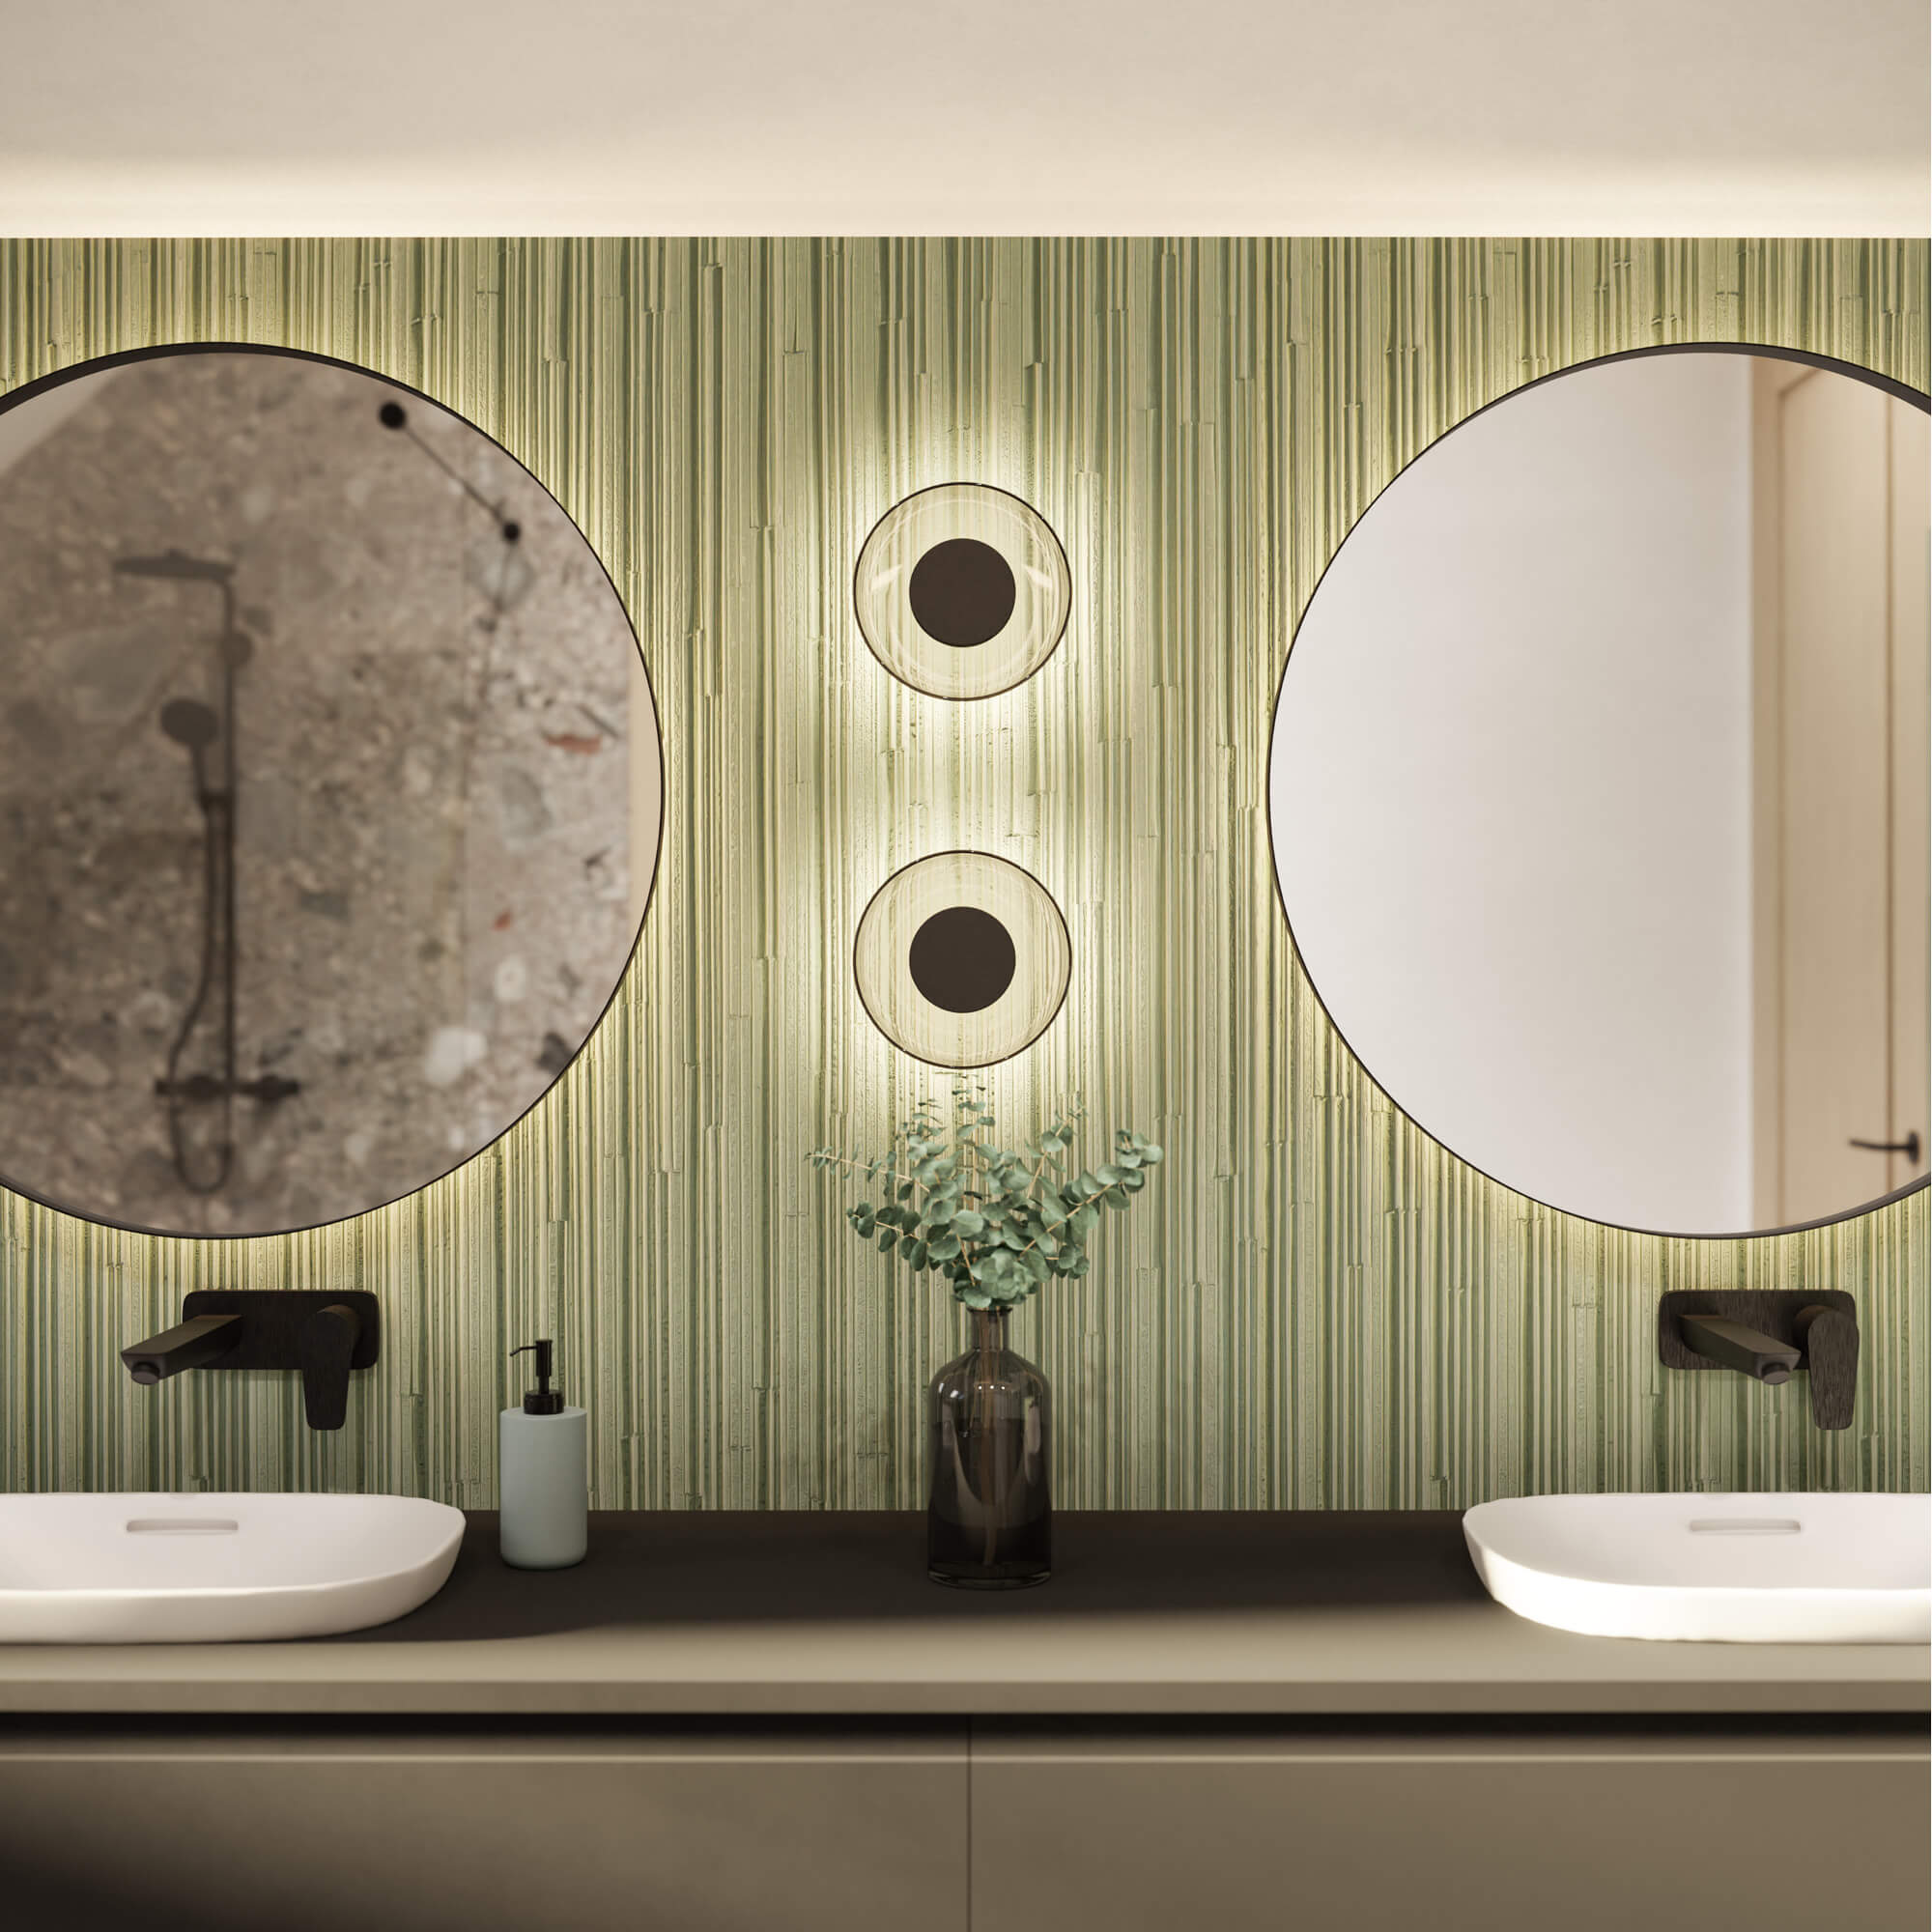 Fürdőszoba látványterv kör alakú tükörrel és lámpával zöld színben, sötét szaniterekkel